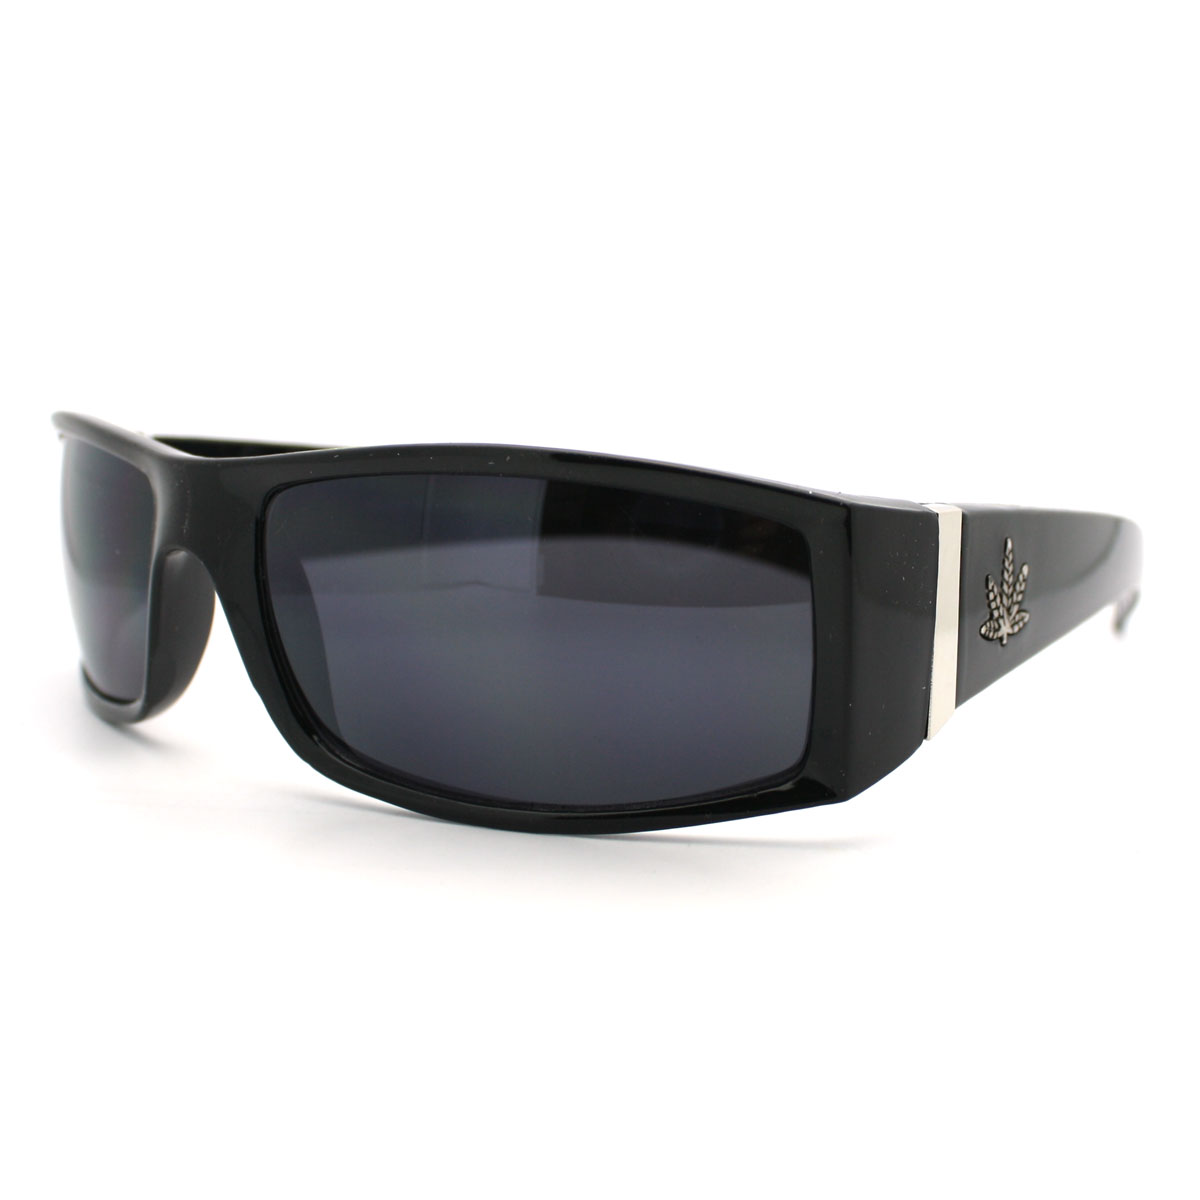 All Black Rectangular Lens Gangster Biker Sunglasses with Pot Leaf ...